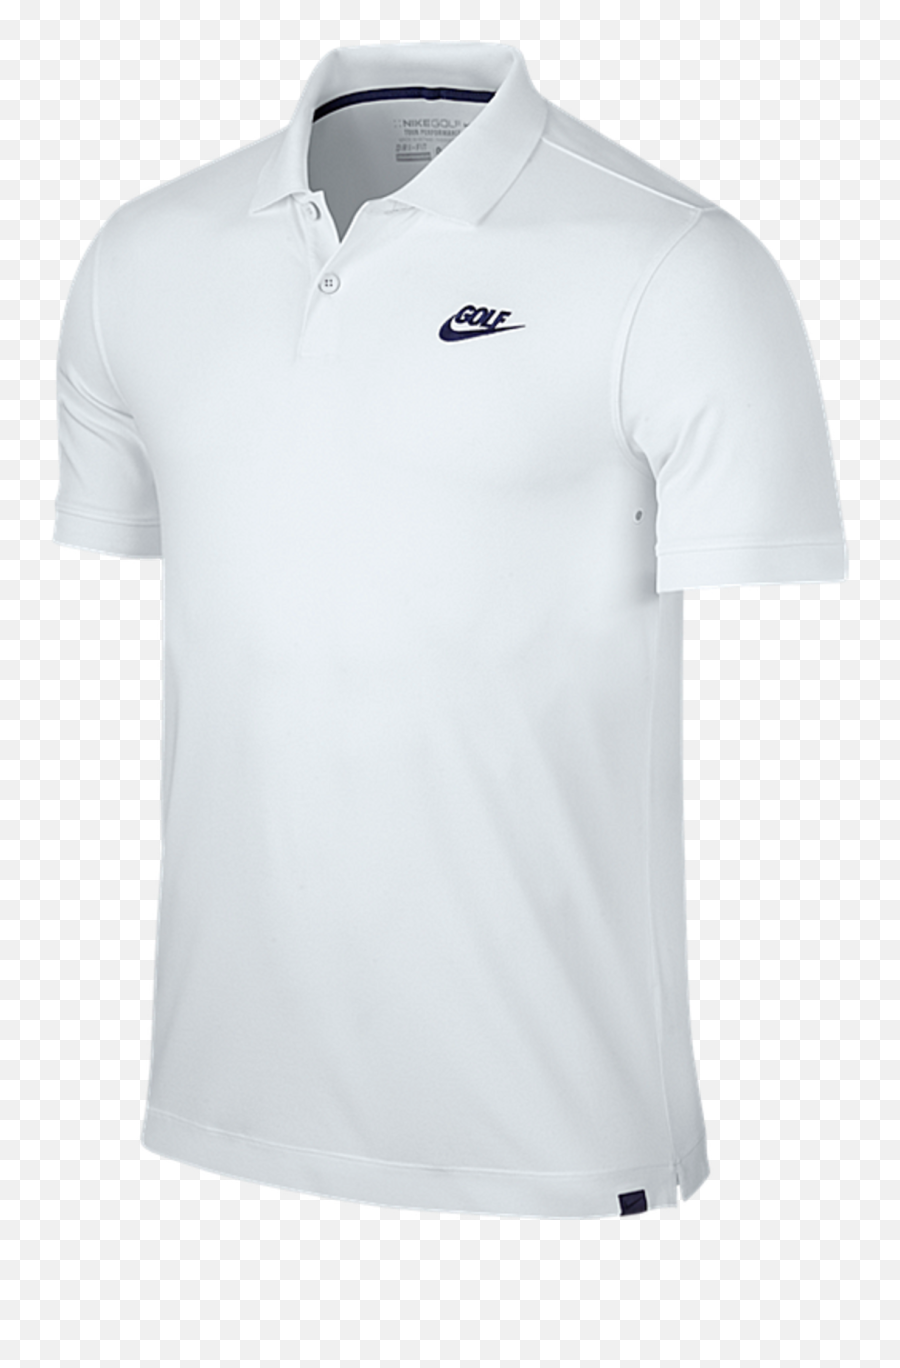 Nike Golf Shirt With Golf Clubs - Puma Emoji,Rf Emoji Shirt